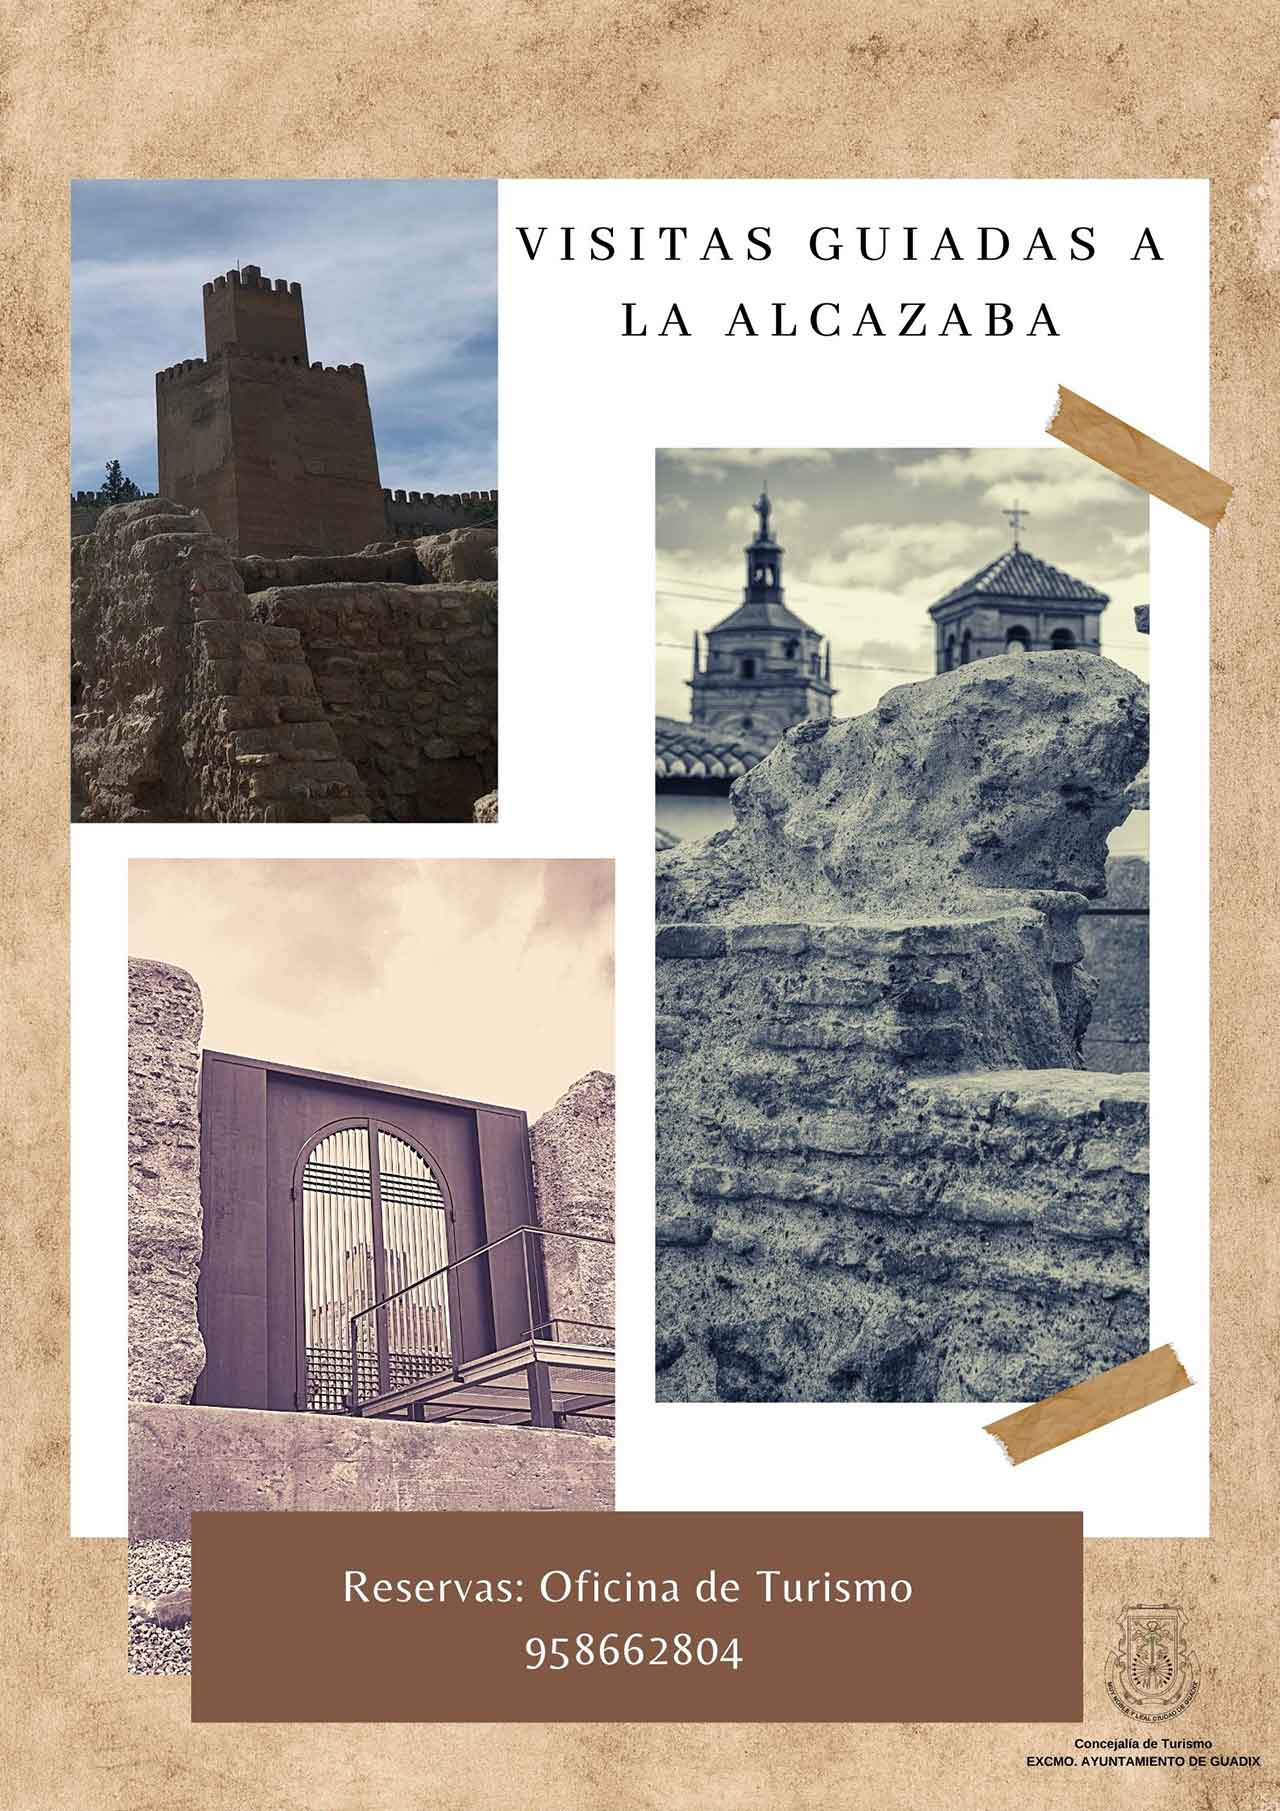 Visitas guiadas Alcazaba Guadix